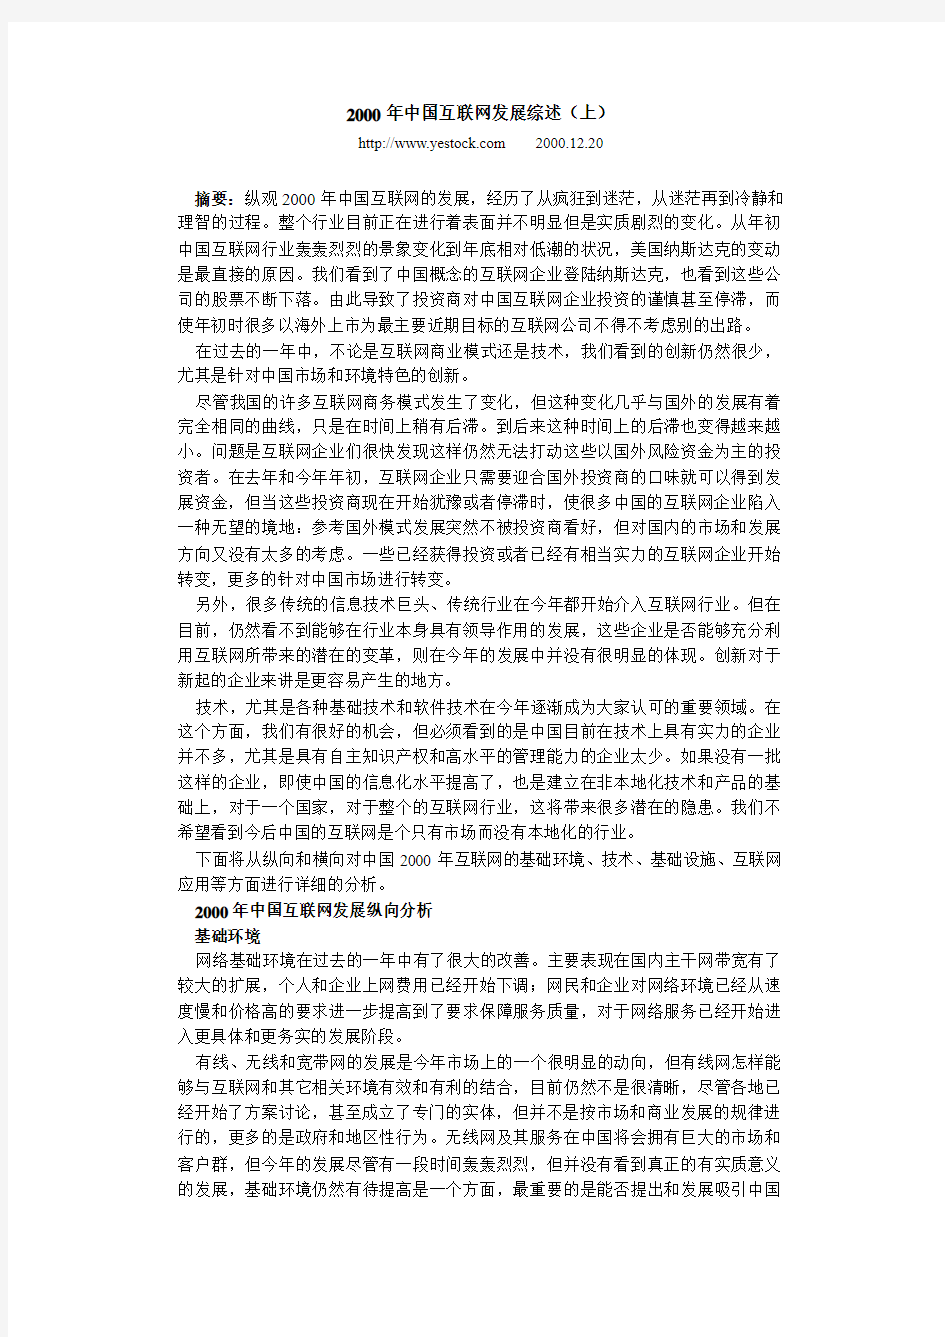 2000年中国互联网发展综述(上)